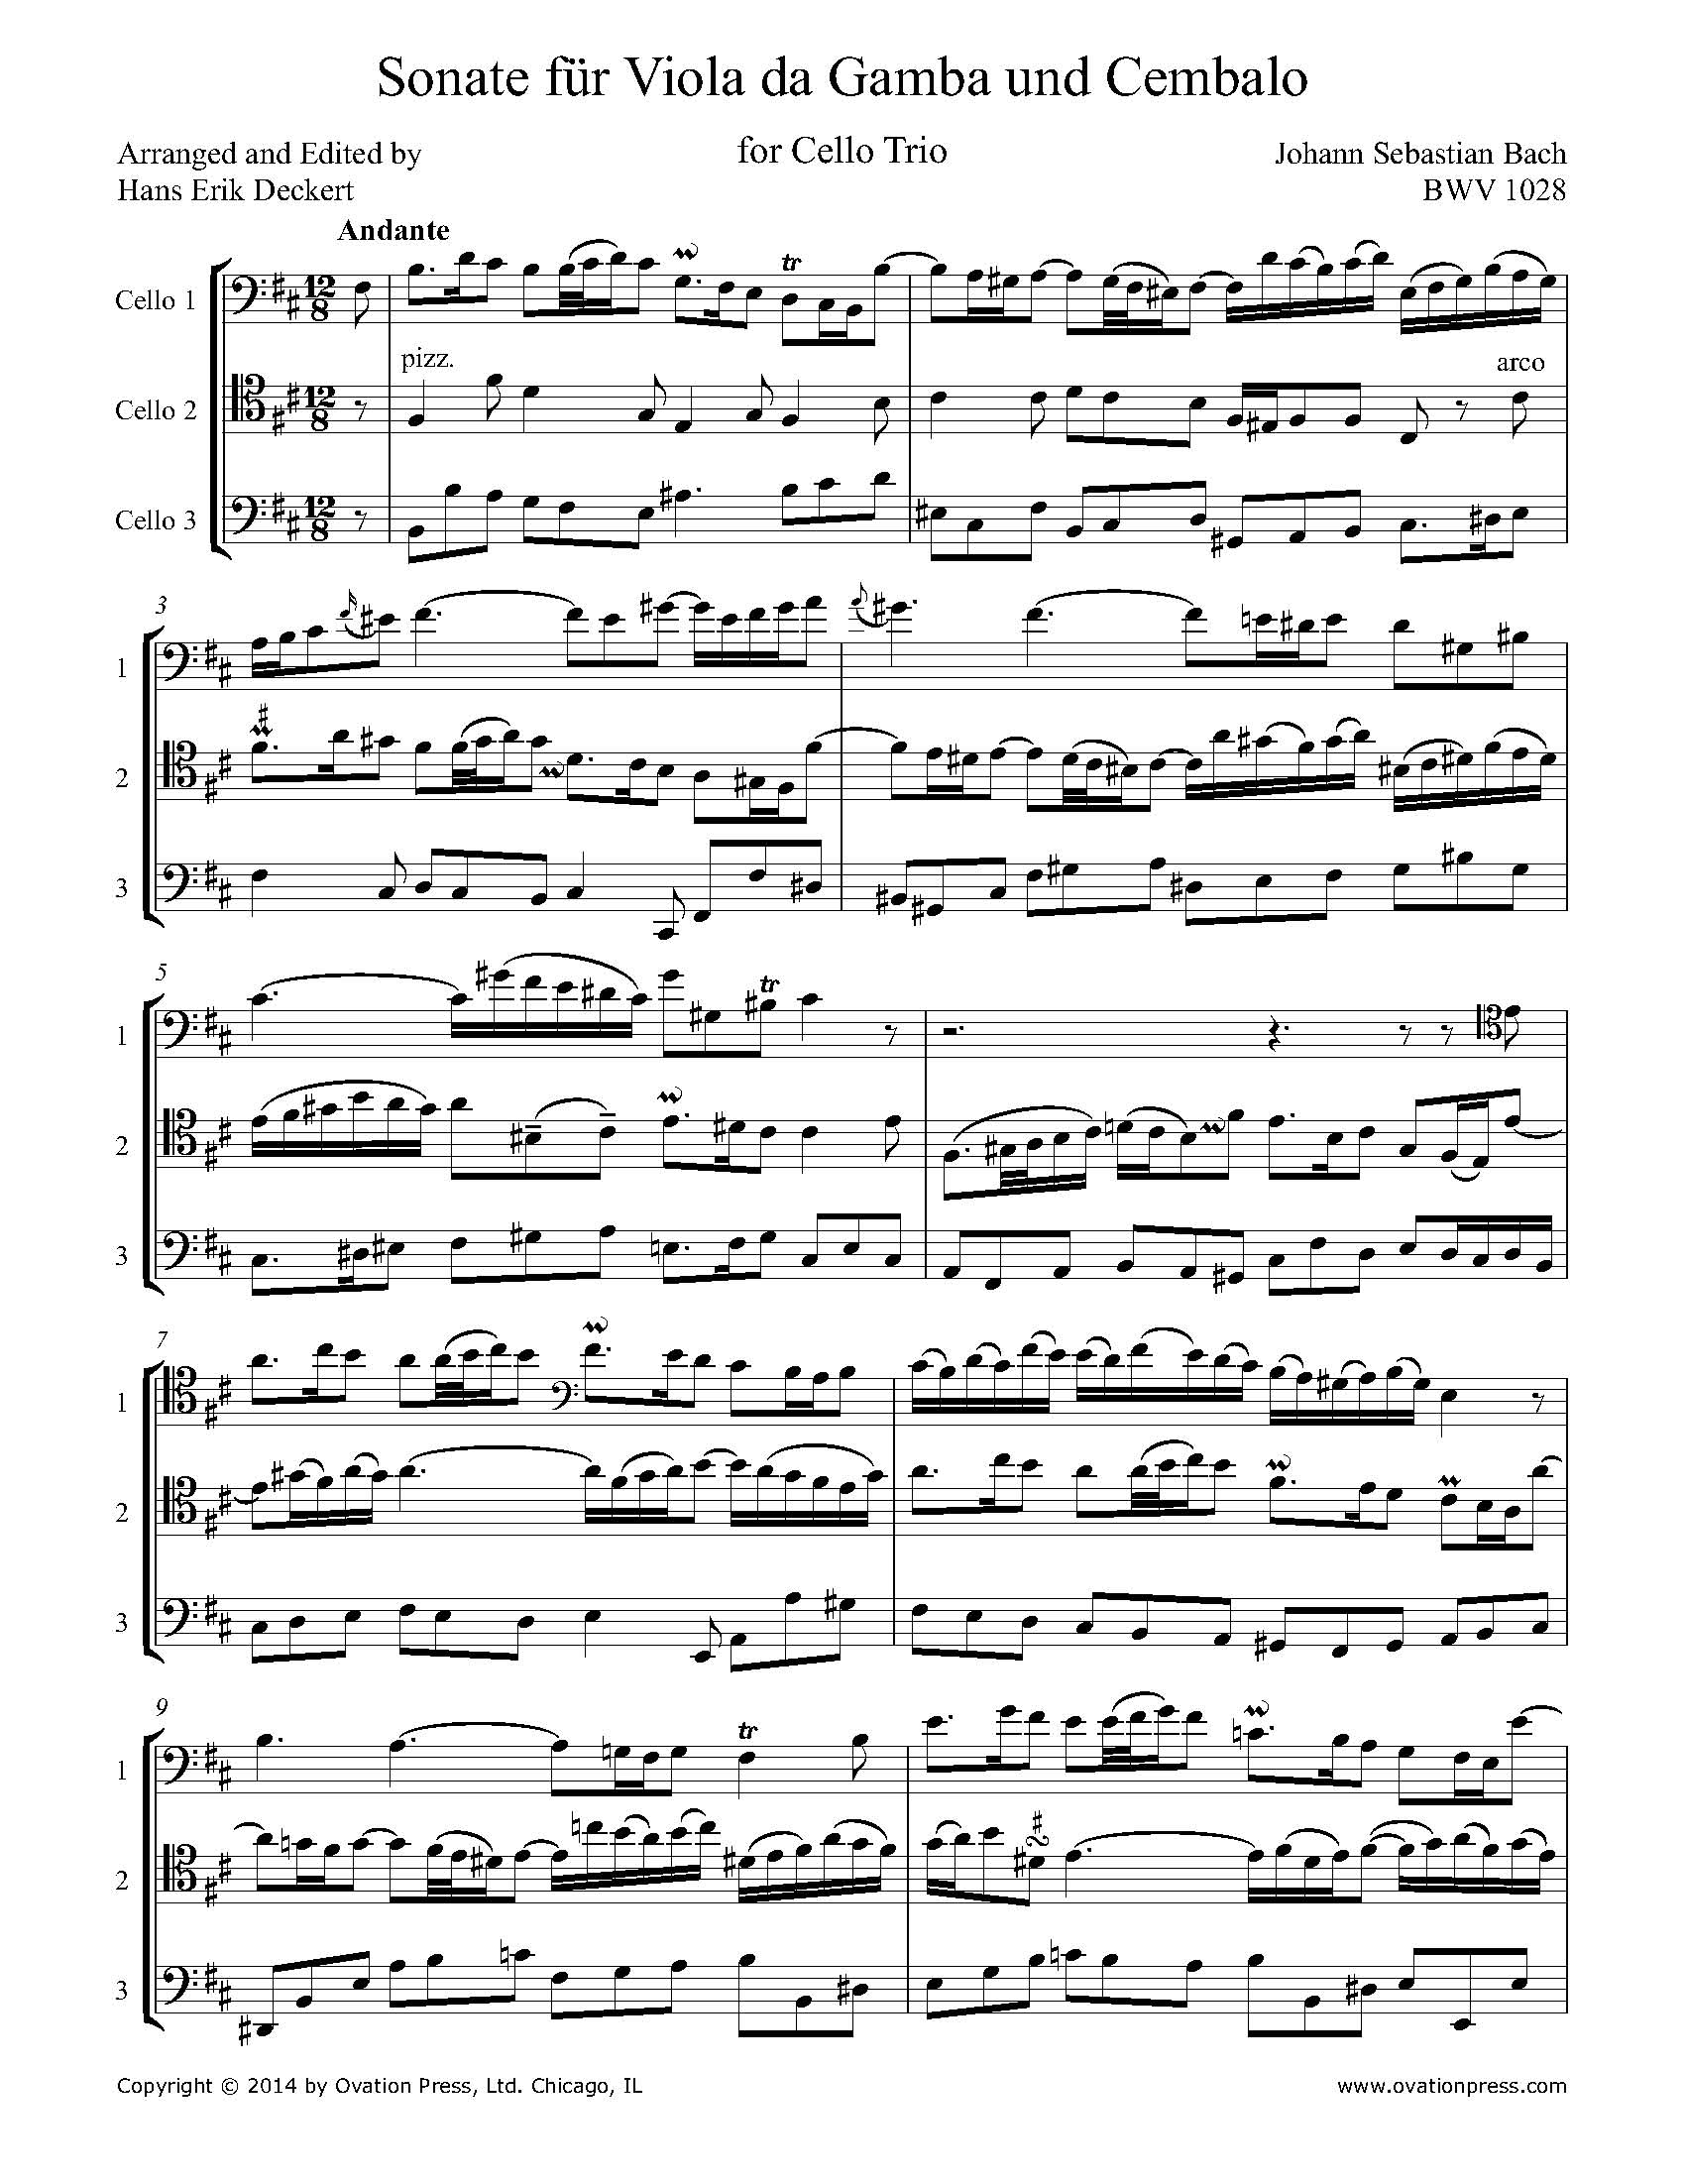 Bach Andante from Sonate für Viola da Gamba und Cembalo BWV 1028 (for Cello Trio)